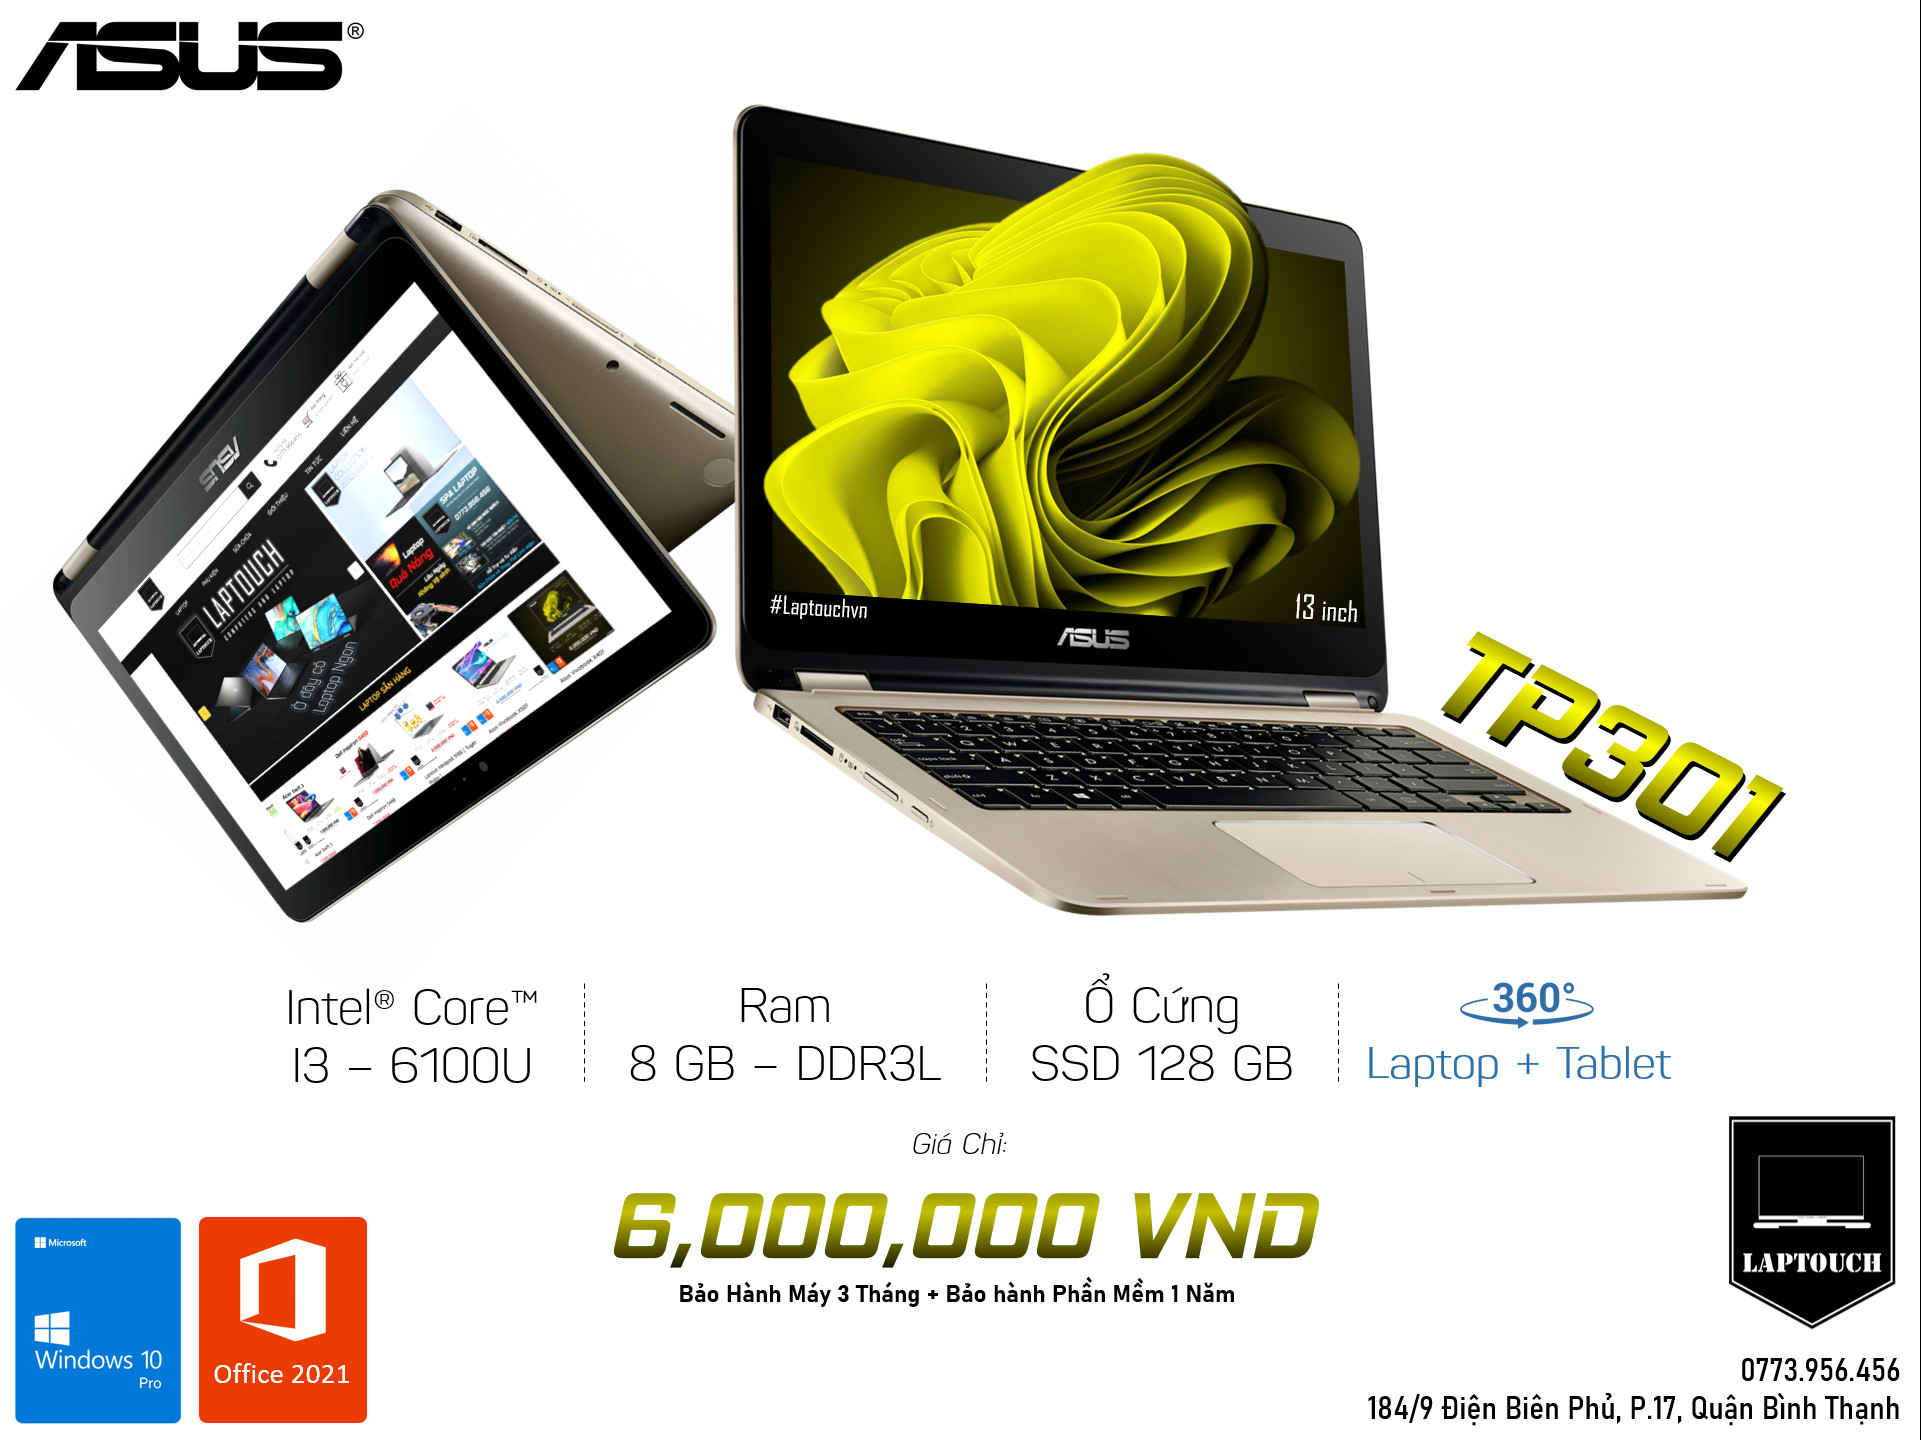 Asus TP301 [ Laptop + Tablet 360 ]